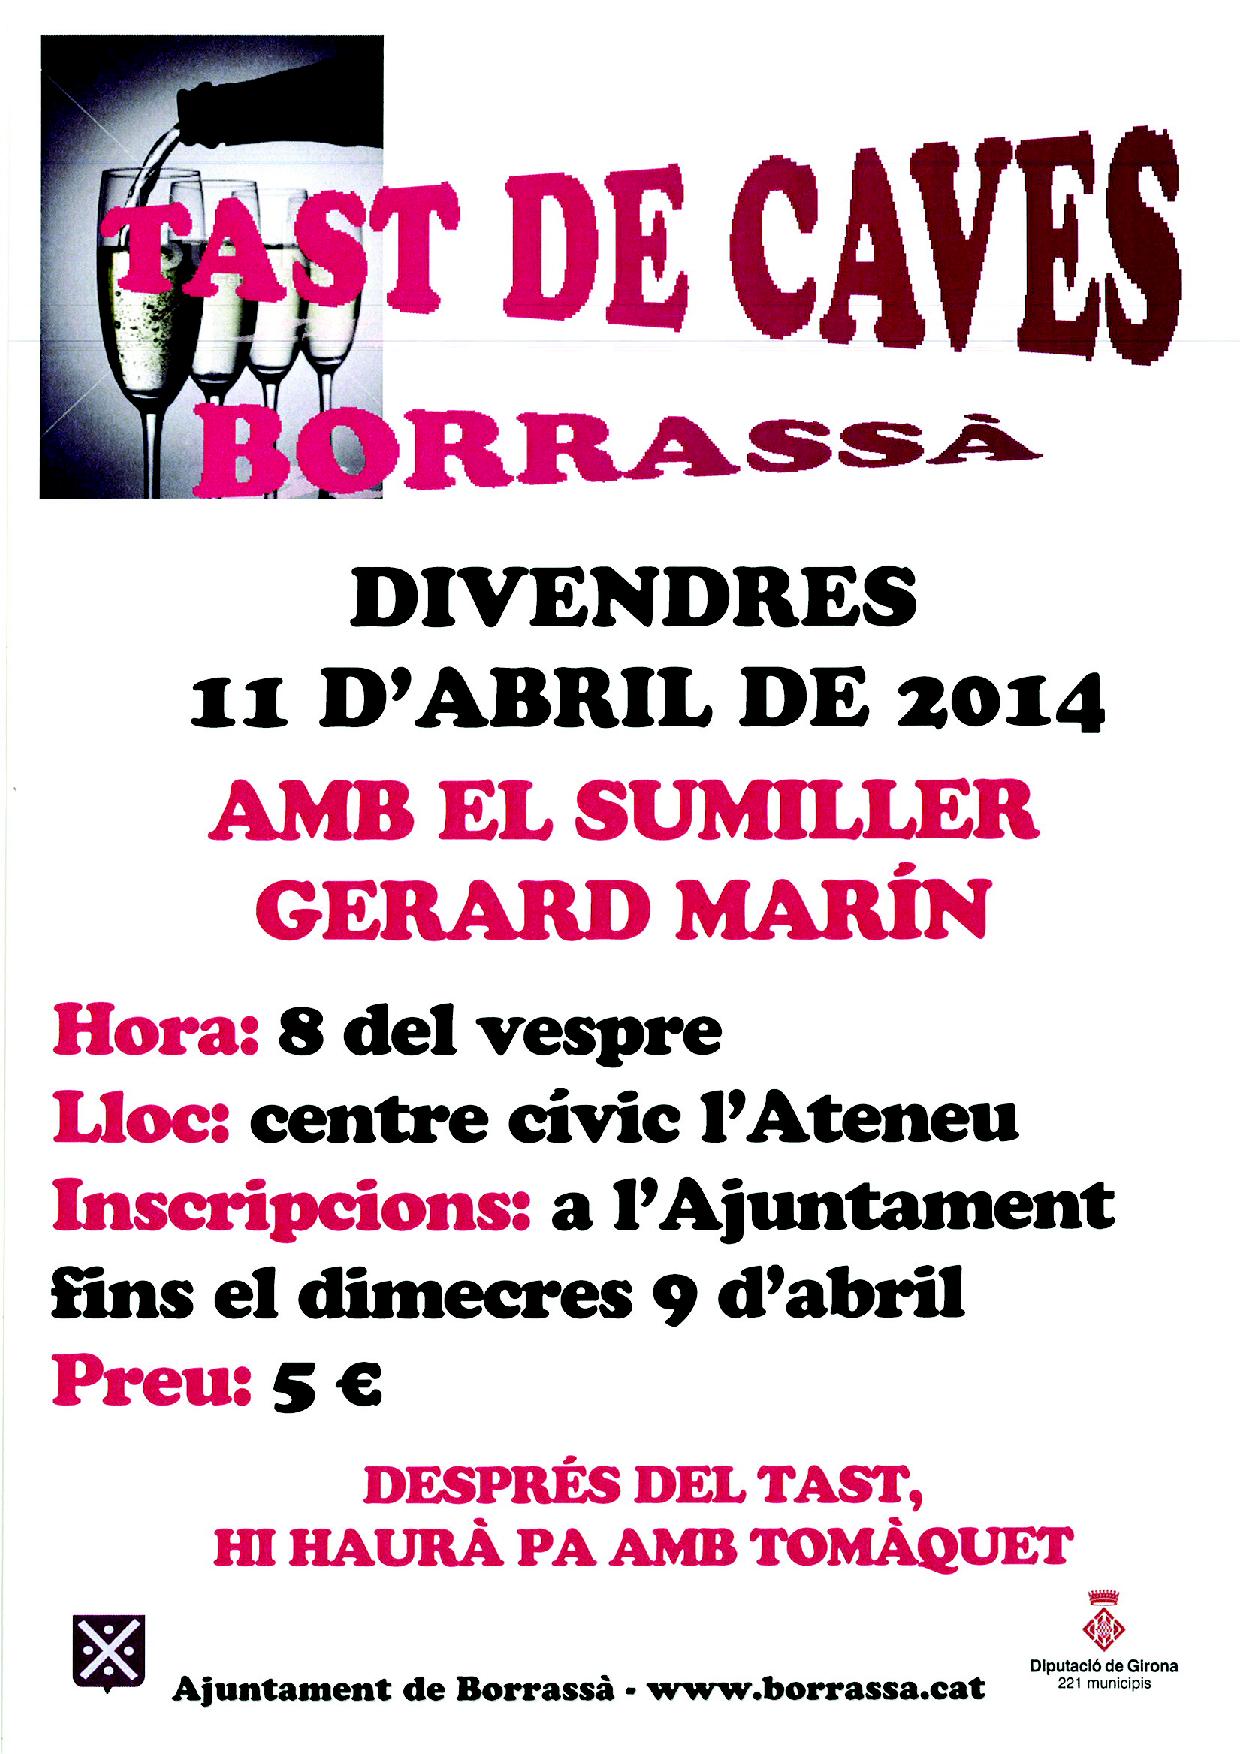 El proper divendres 11 d'abril, el centre cívic i social l'Ateneu, acollirà un tast de caves dirigit pel sumiller Gerard Marín.